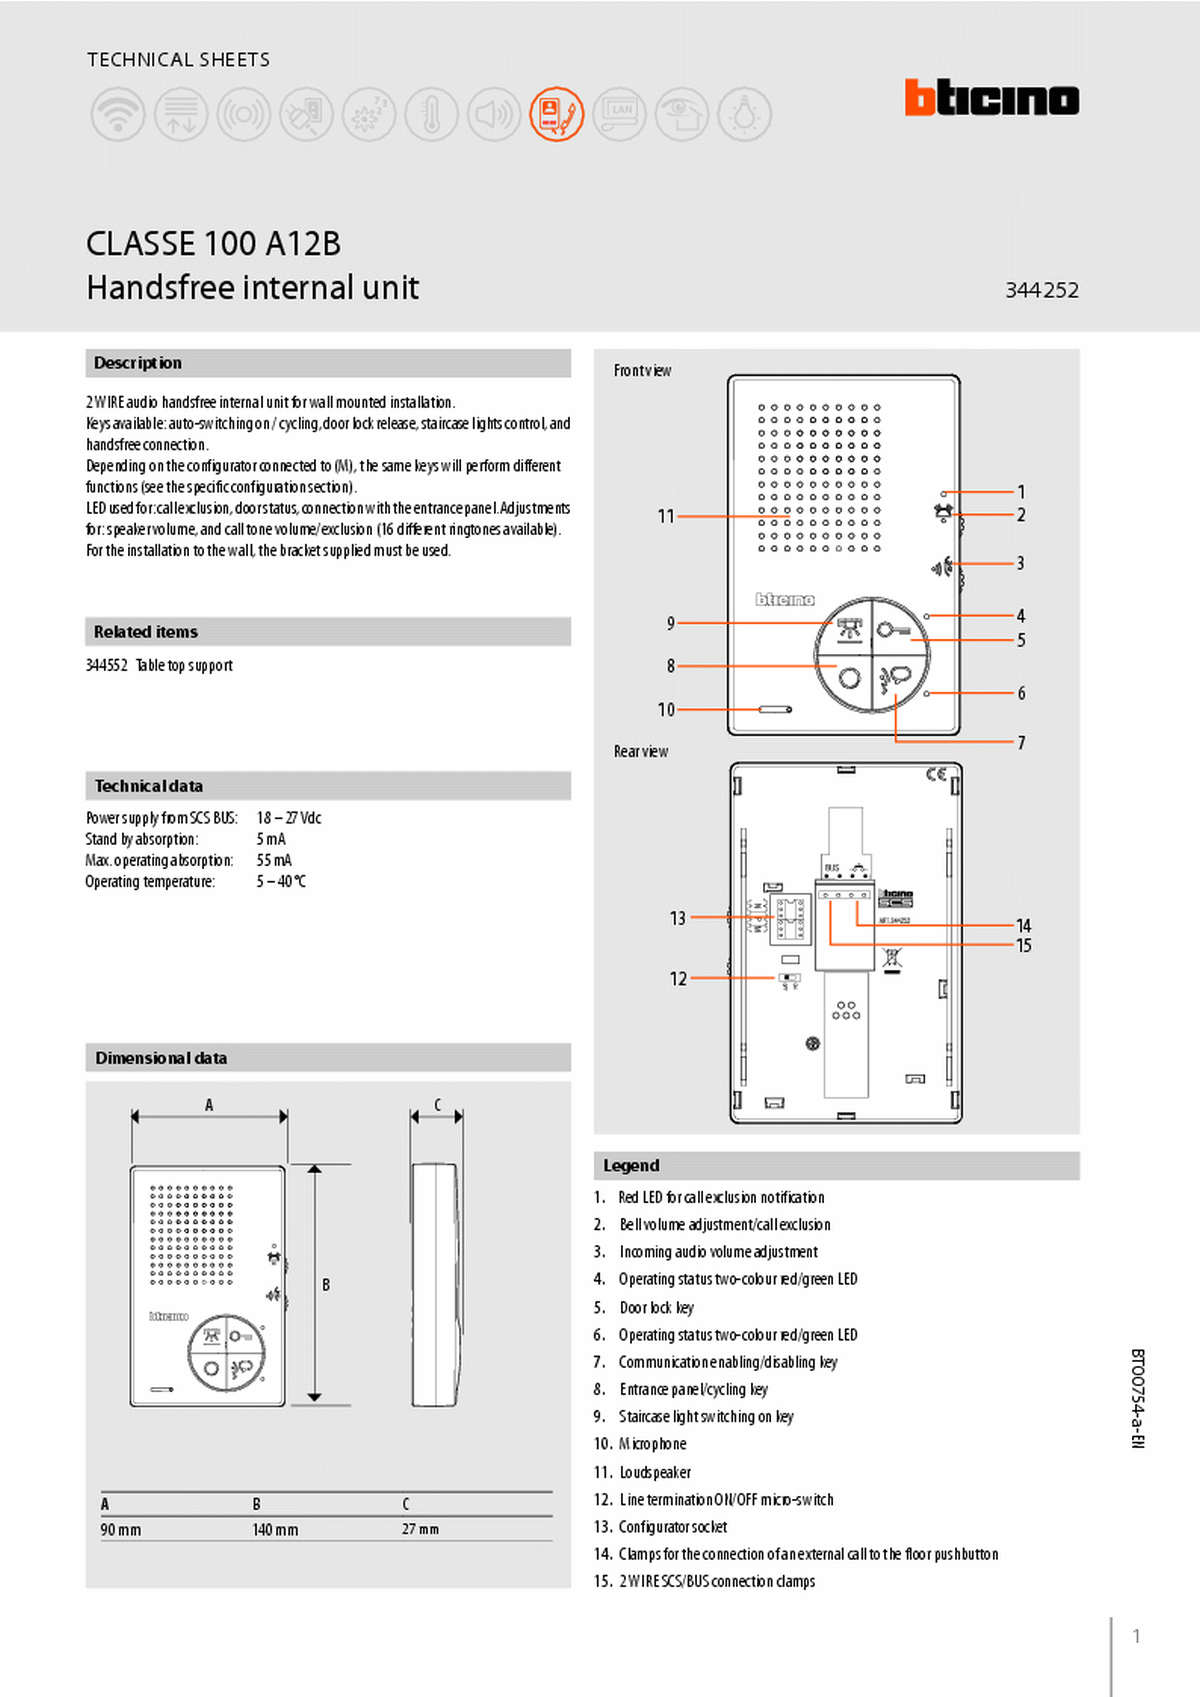 Fabrieksschema T-40 technical sheet